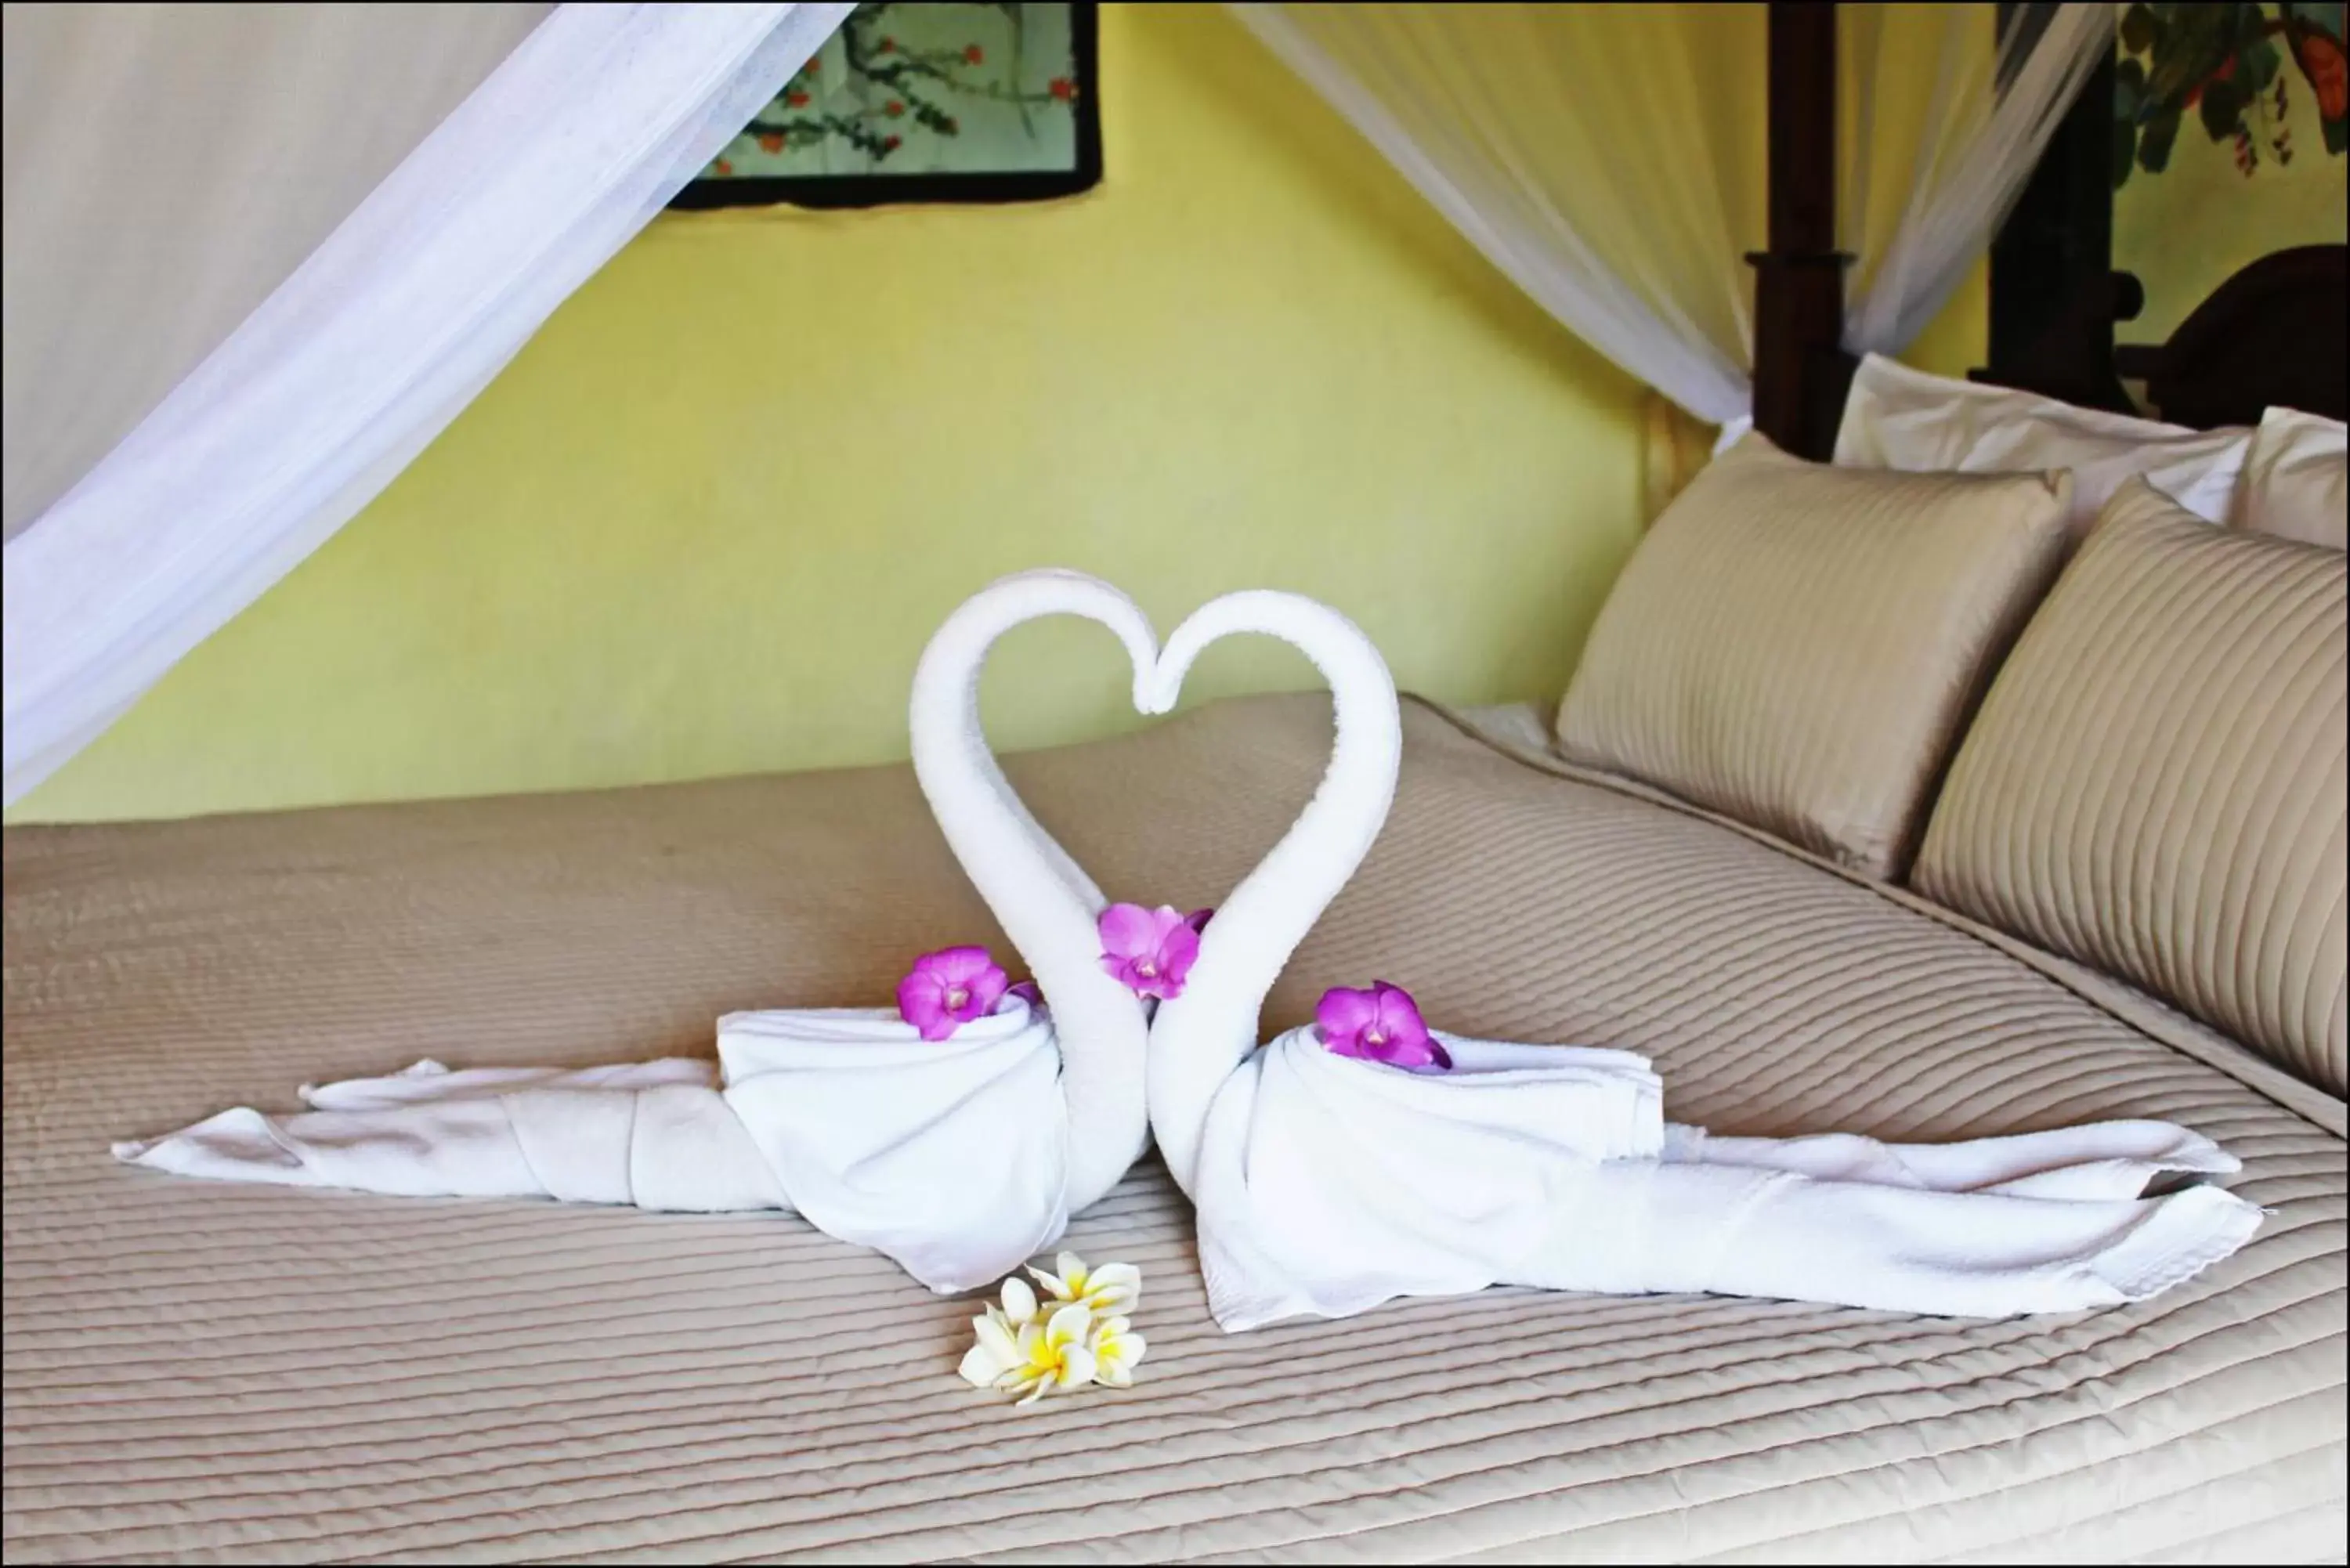 Bed in Pai Vimaan Resort